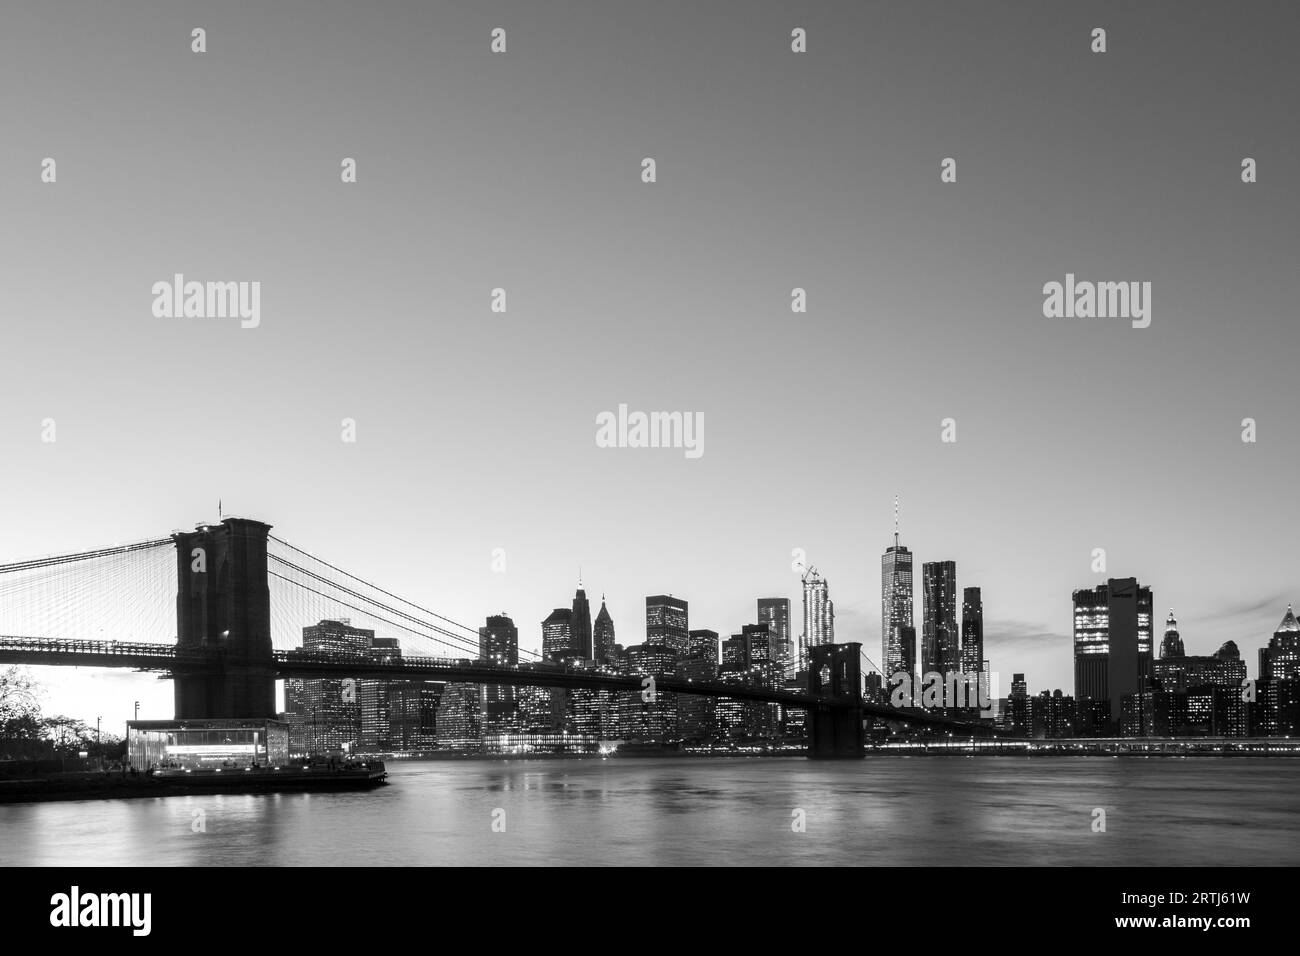 New York, Stati Uniti d'America, 18 novembre 2016: Skyline di Lower Manhattan con Ponte di Brooklyn al tramonto Foto Stock